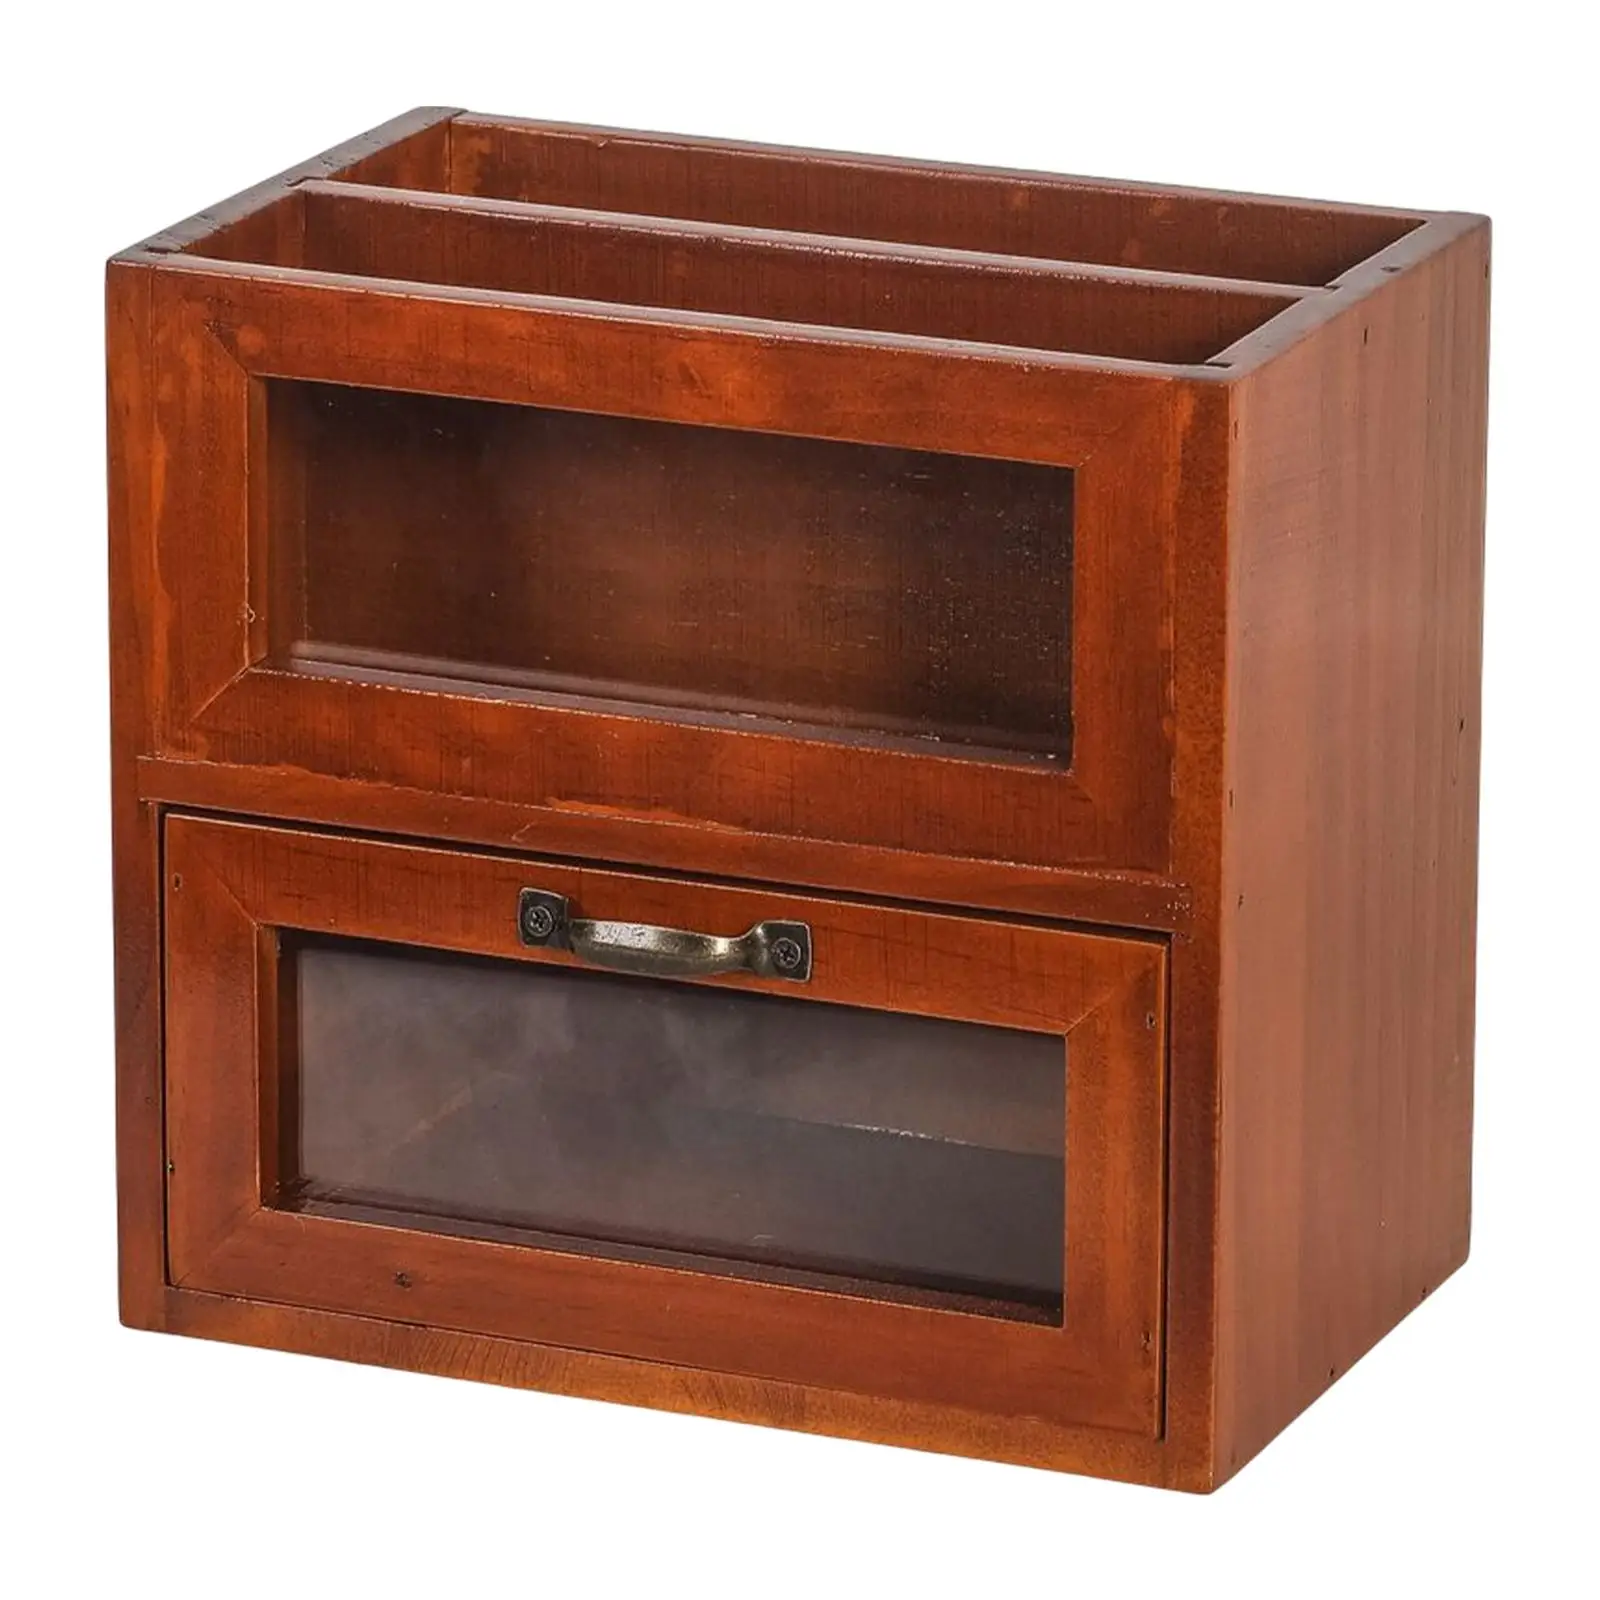 Desktop Storage Cabinet Wooden Organizer Display Case Wooden Box Storage Cabinet Storage Stand Dorm Vanity Bathroom Kitchen